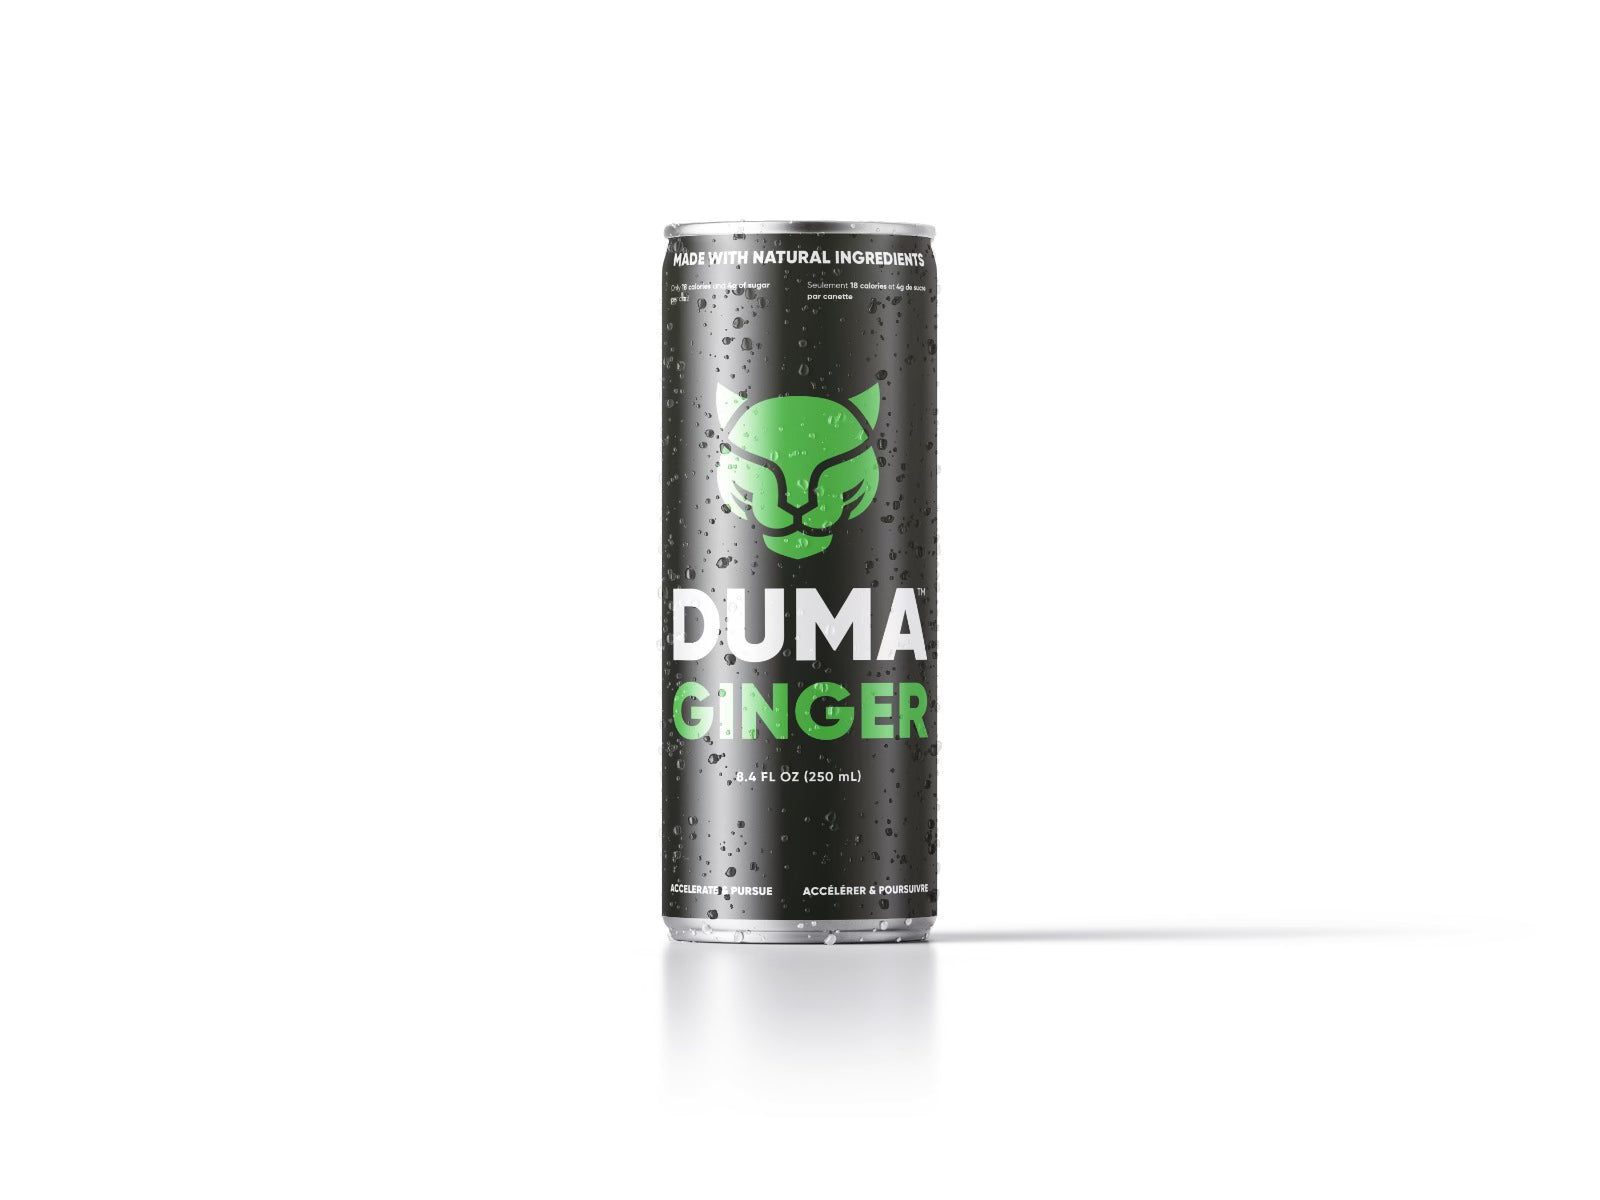 DUMA Ginger Energy Drink - Extreme Snacks